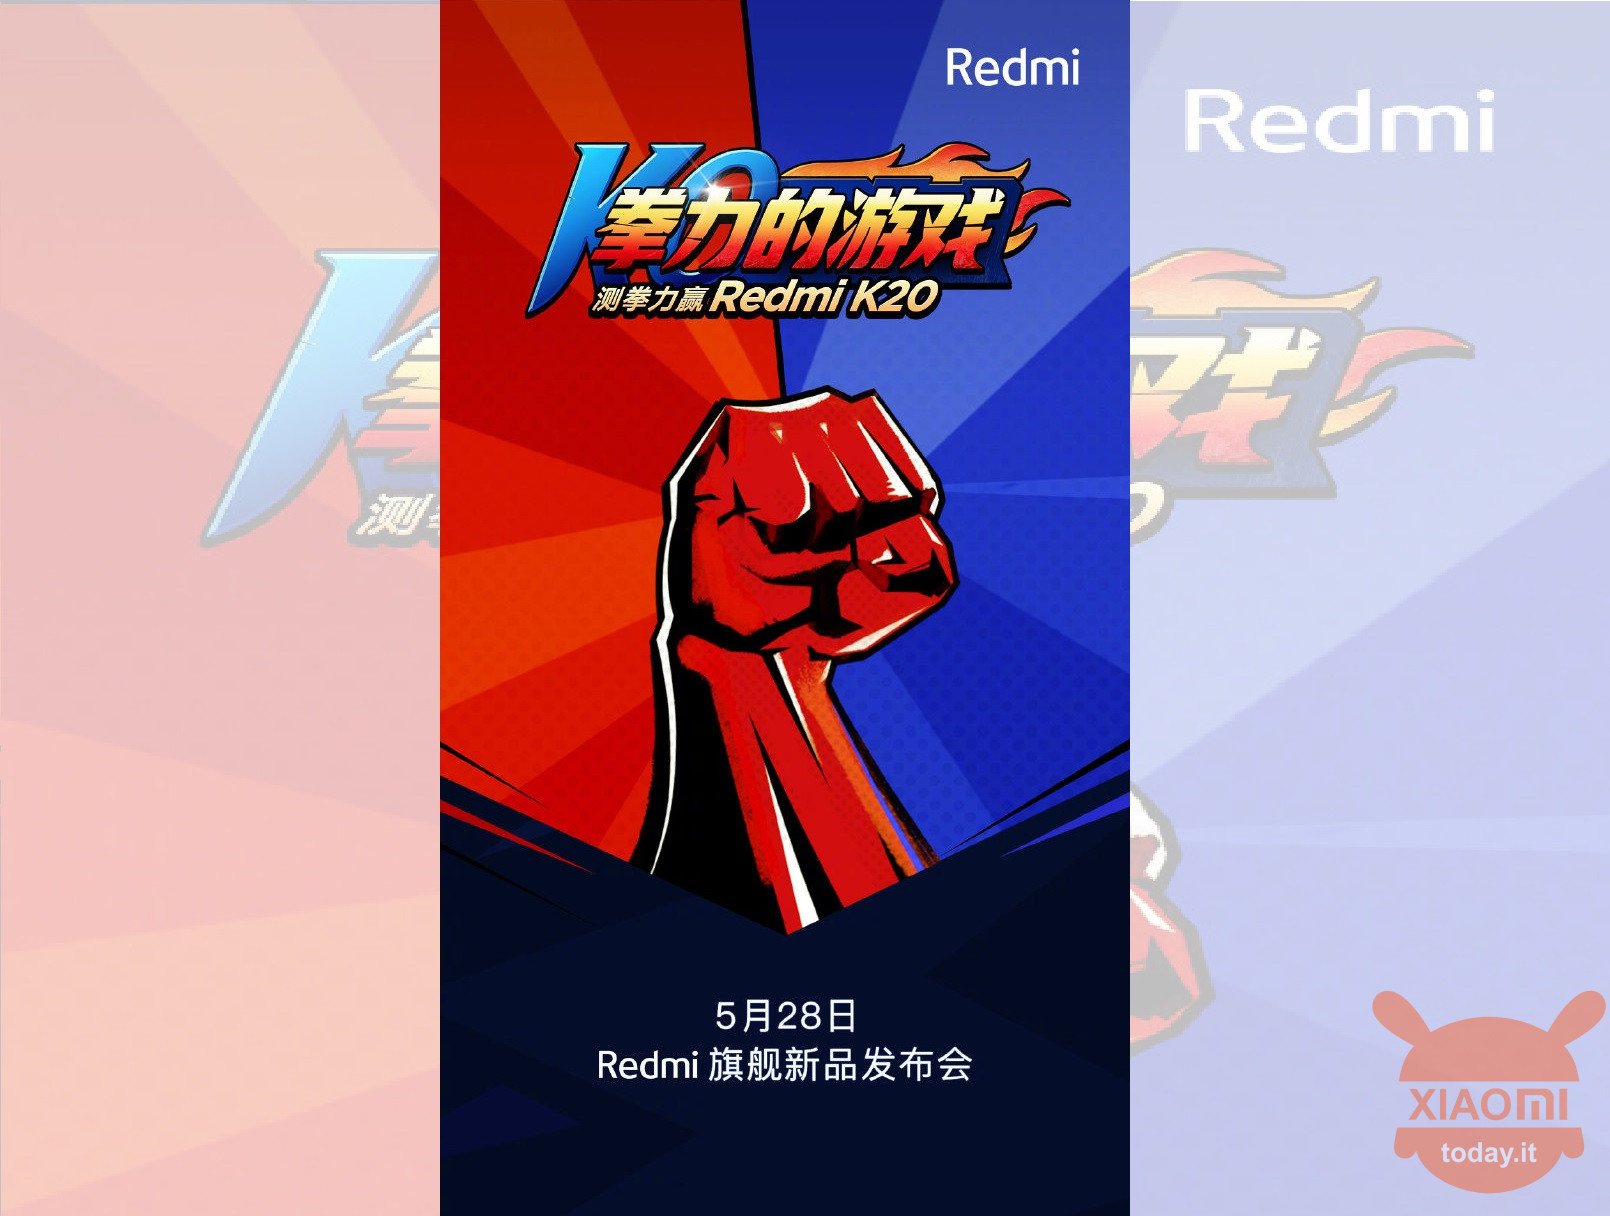 Redmi K20 Redmi K20 Pro 27w fast charge